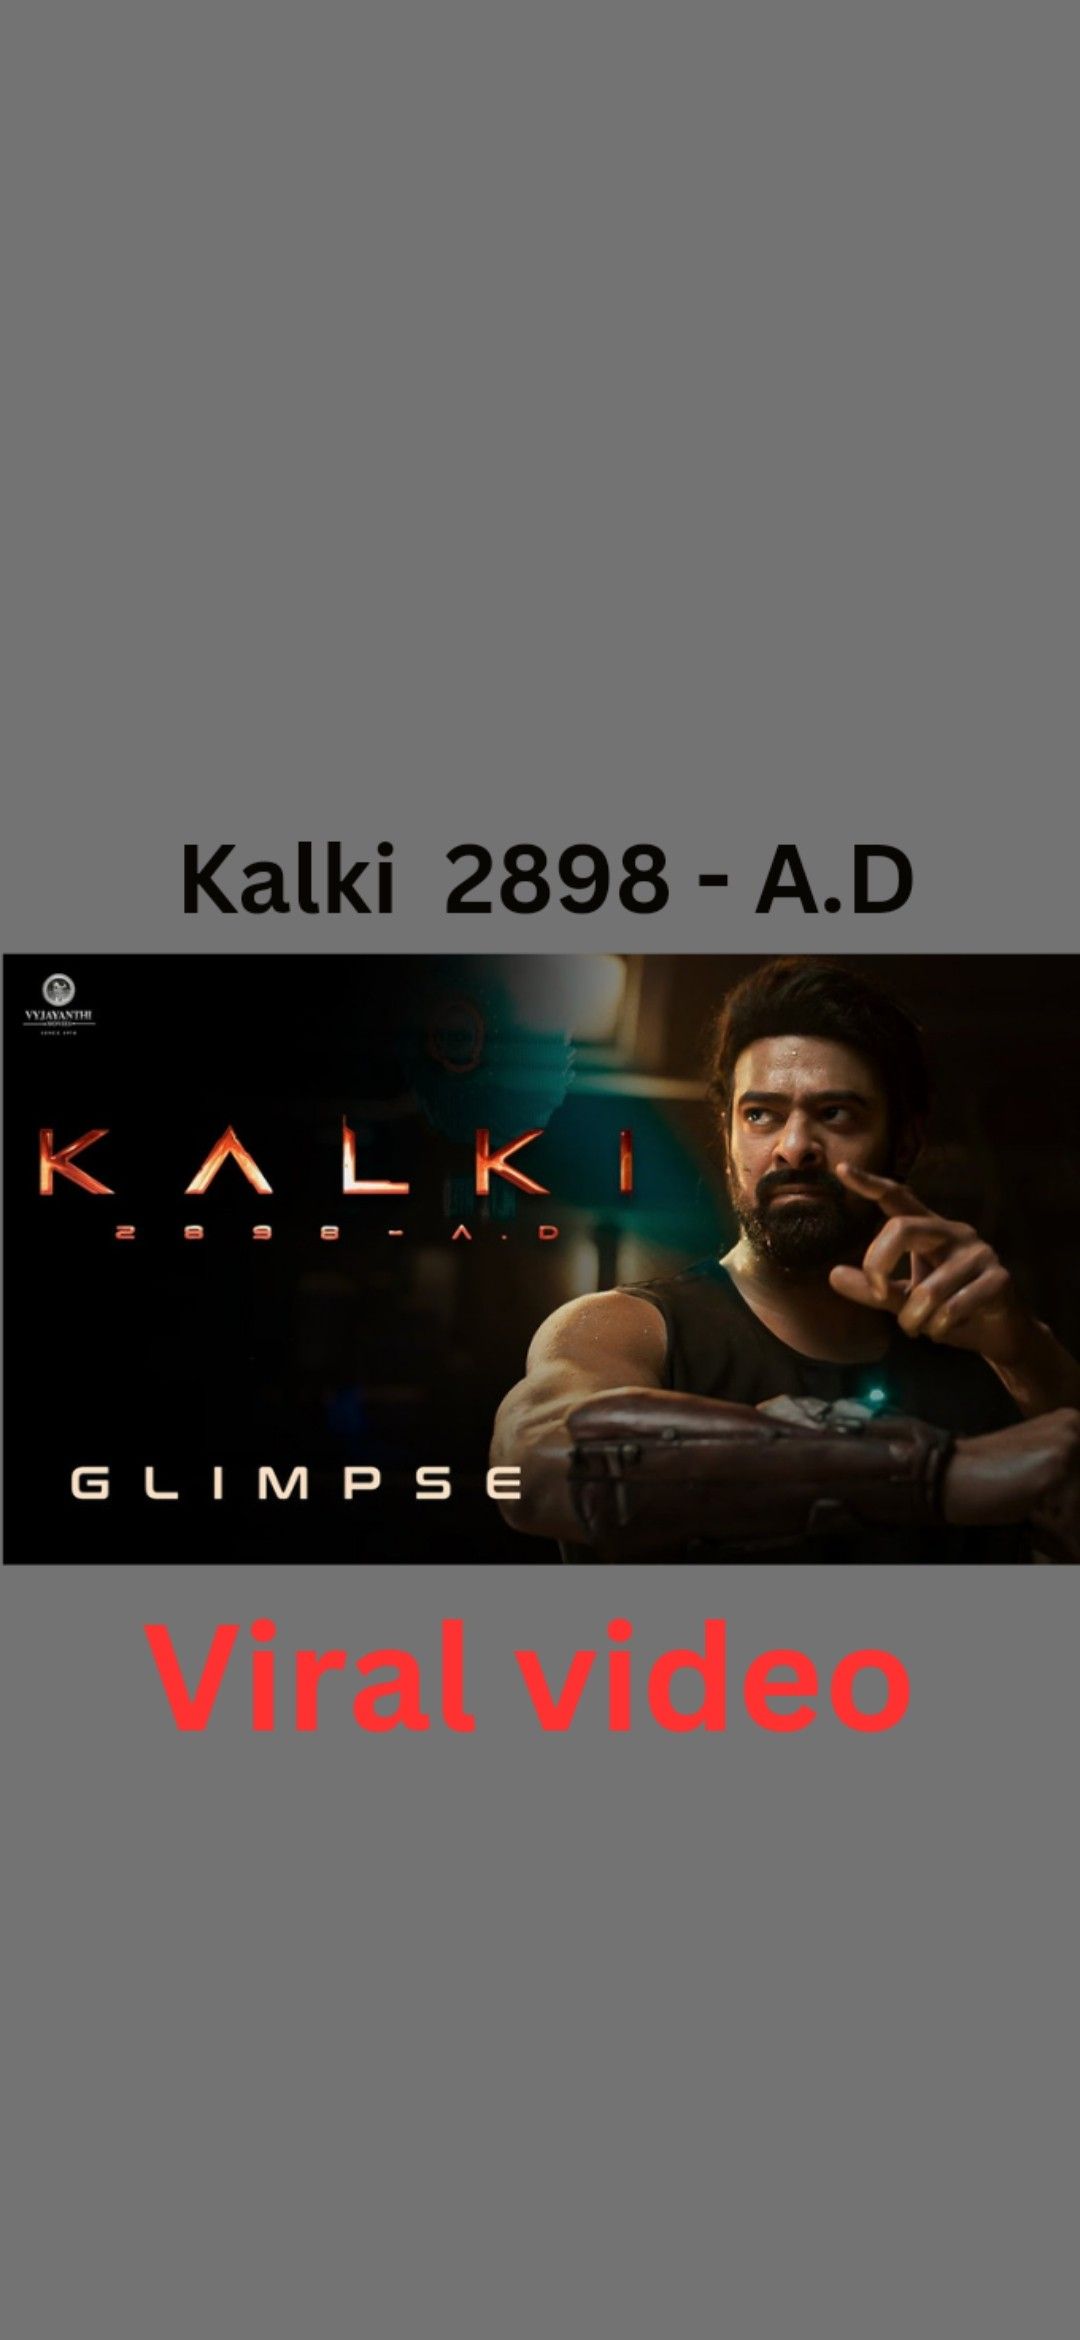 Watch Now: Kalki 2898 AD Glimpse | Prabhas HD Wallpaper